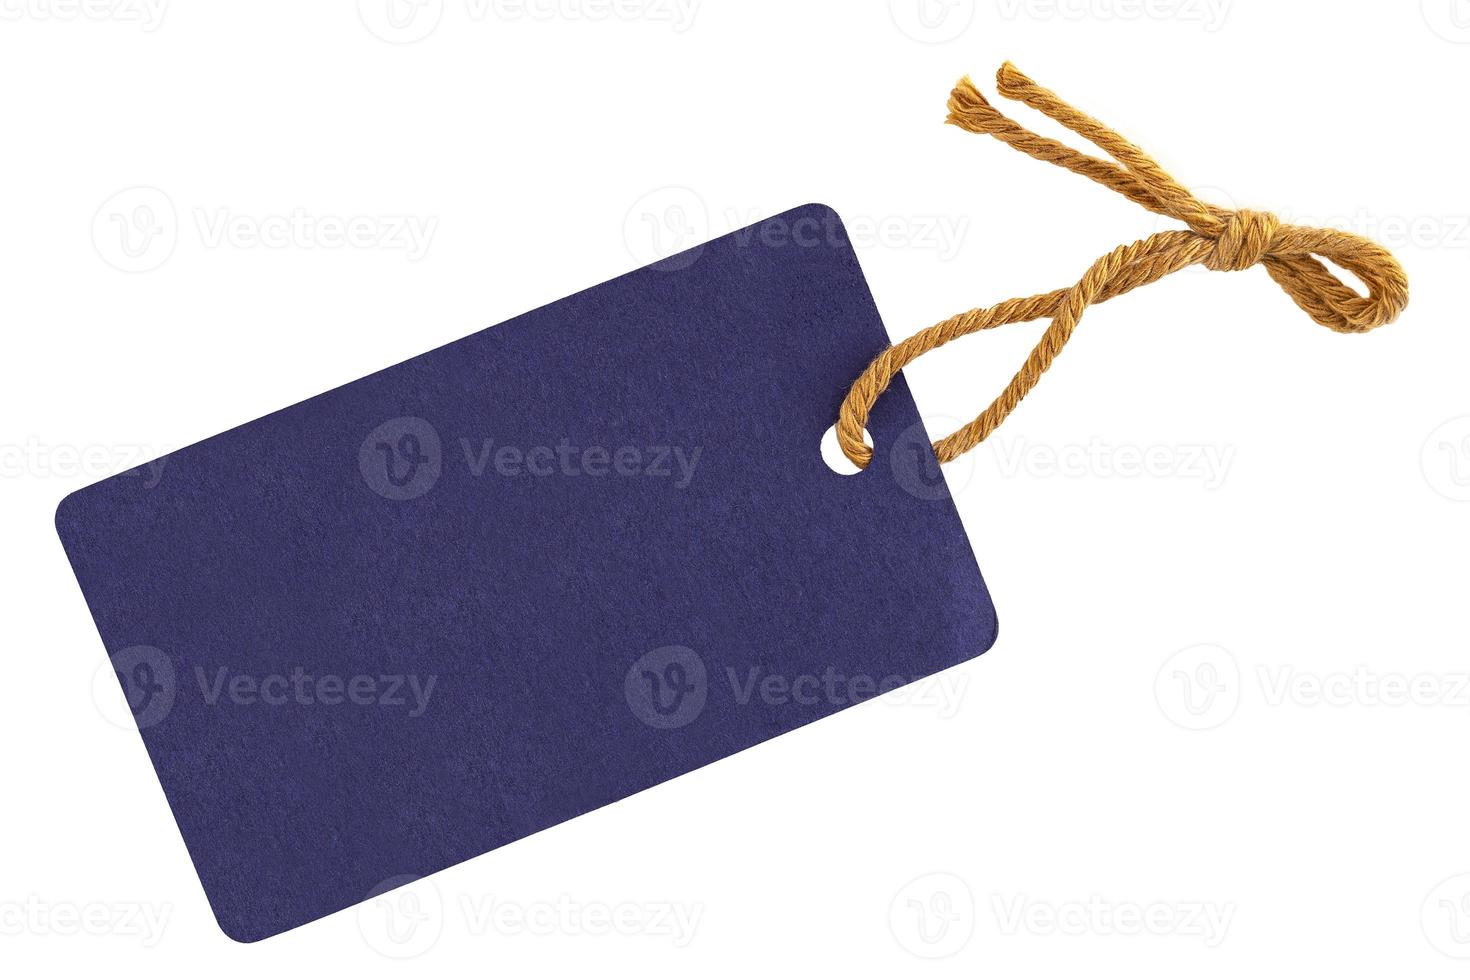 de blanco tags vastgebonden met een touwtje. prijskaartje, cadeaulabel, verkooplabel, adreslabel foto